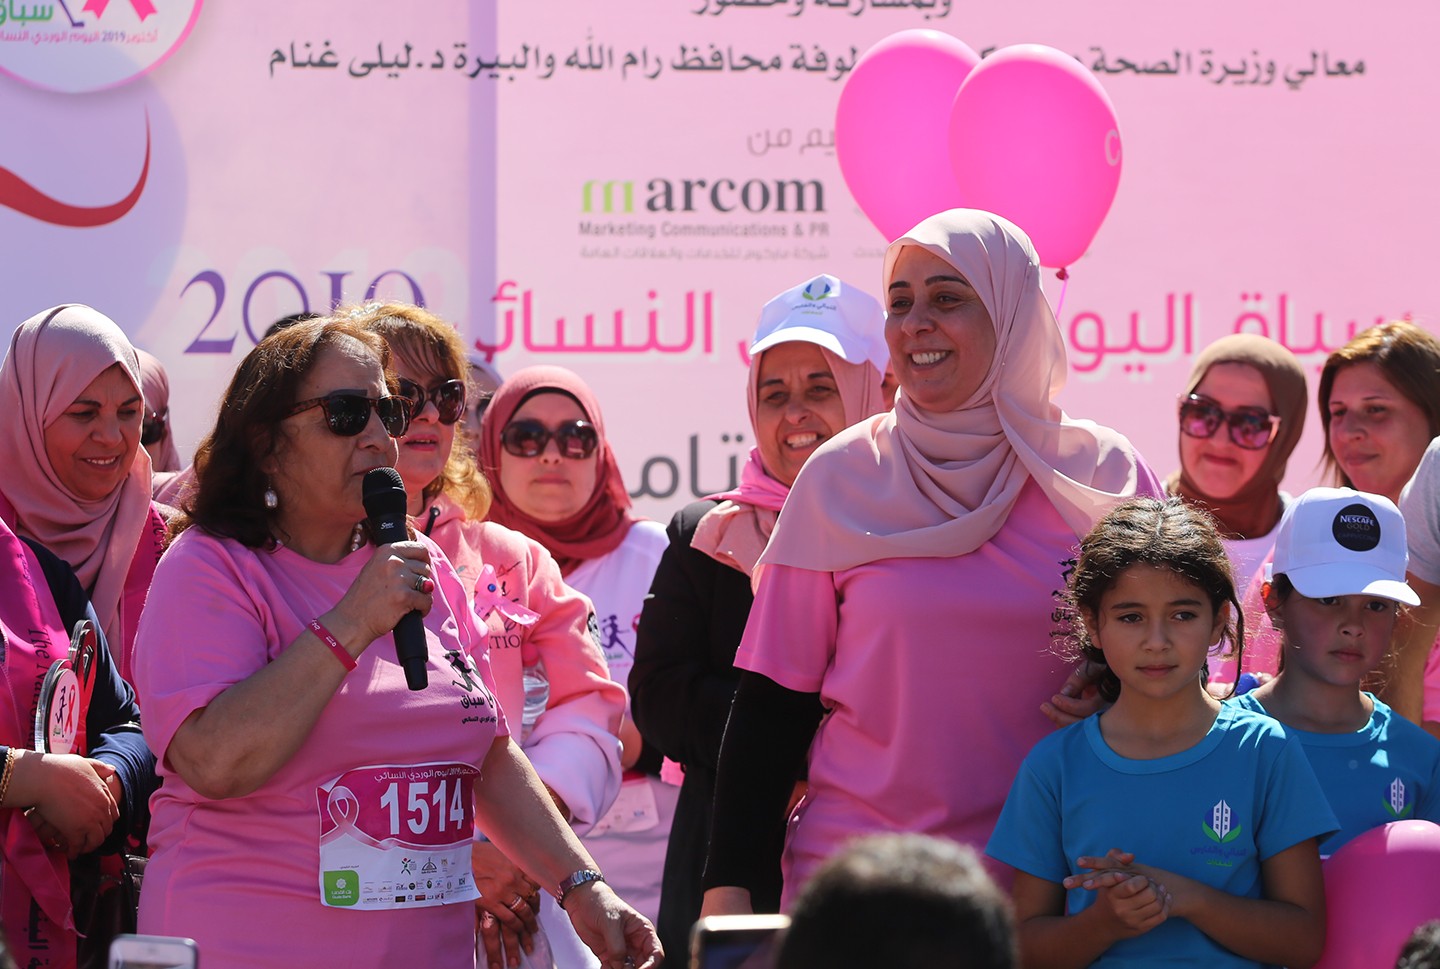 سباق اليوم الوردي النسائي رام الله ‫(1)‬.jpg